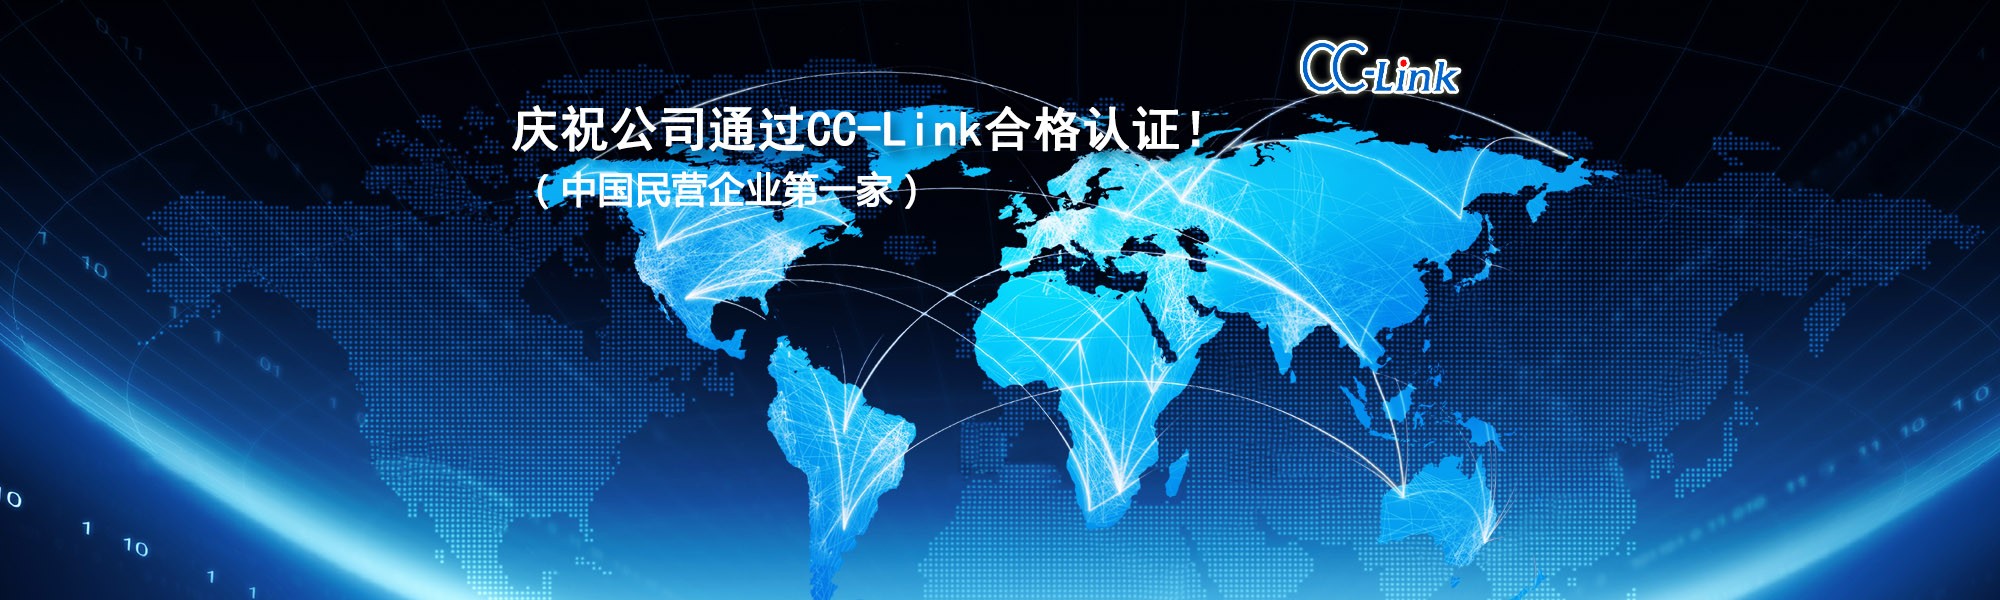 慶祝公司通過CC-Link合格認證！（中國民營企業第一家）